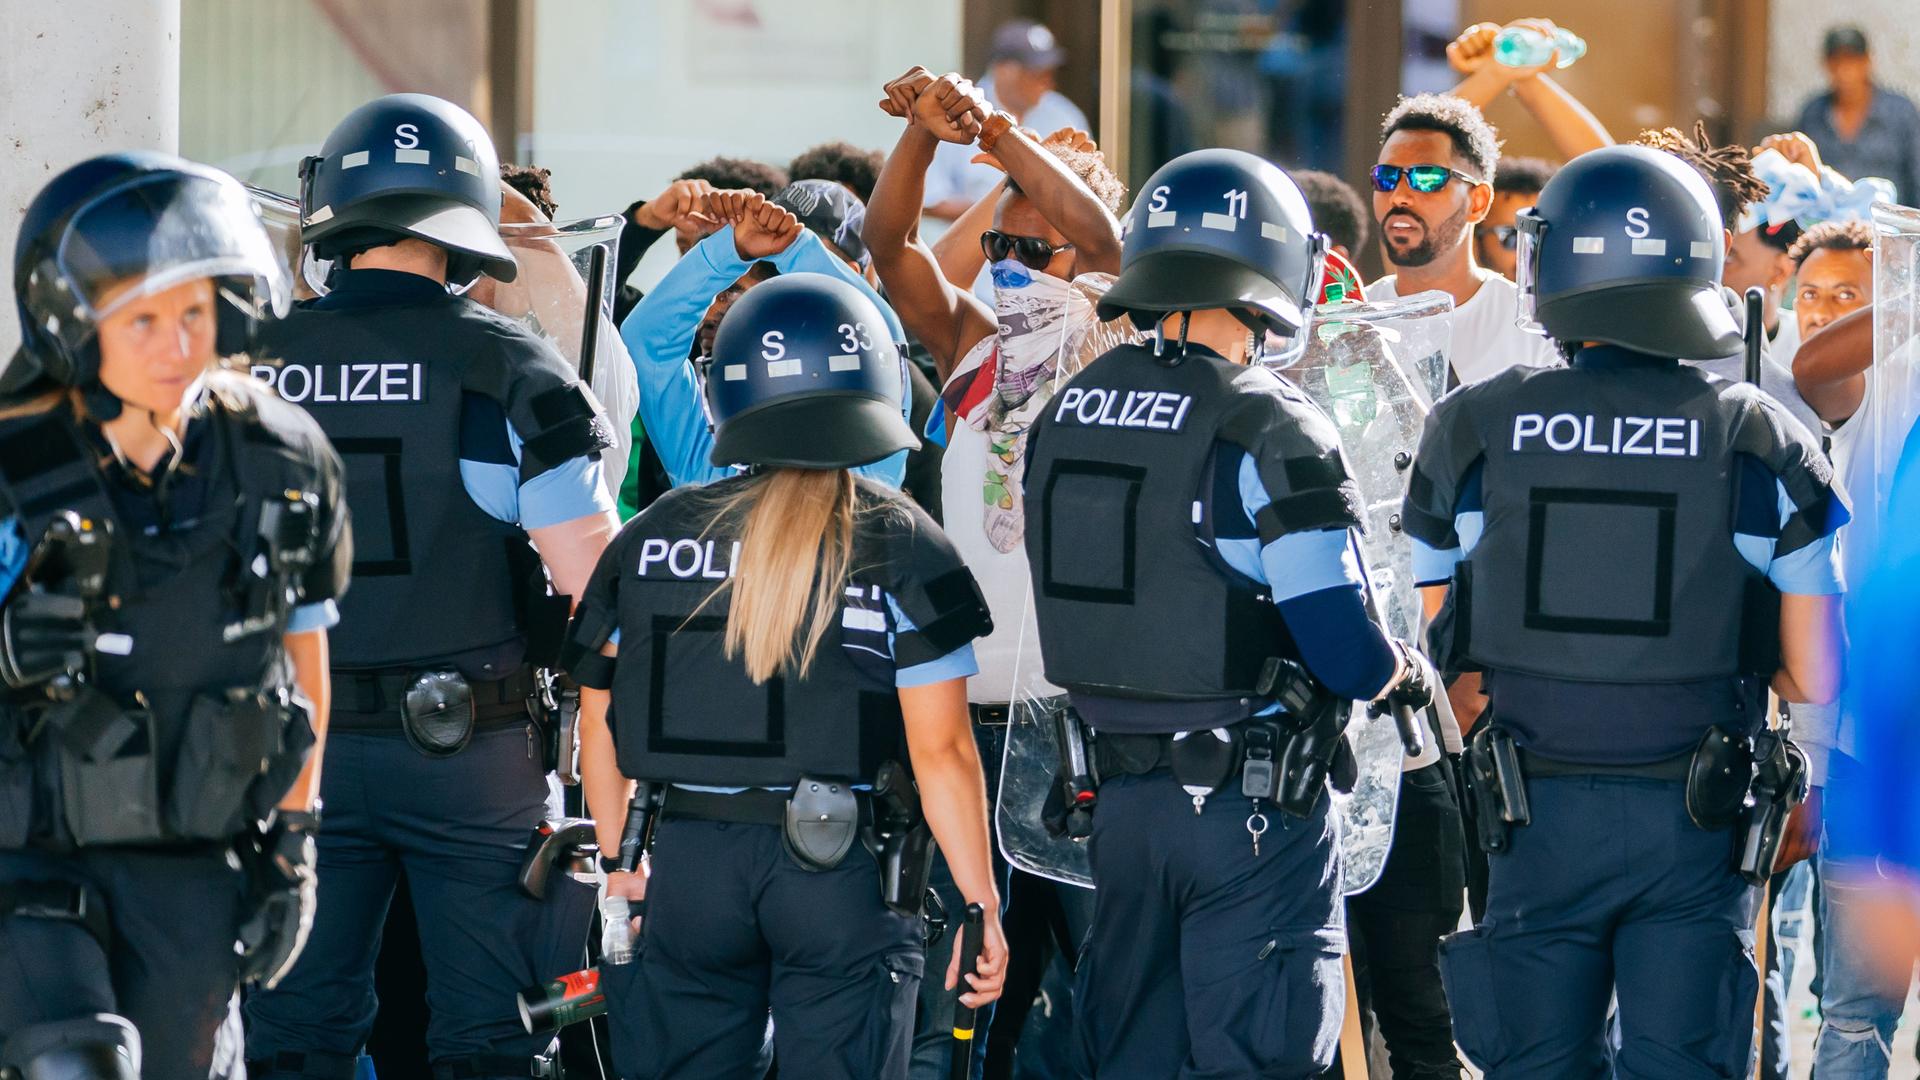 Eine Gruppe von Menschen wird nach Ausschreitungen bei einer Eritrea-Veranstaltung von Polizeikräften in Schutzkleidung in Schach gehalten